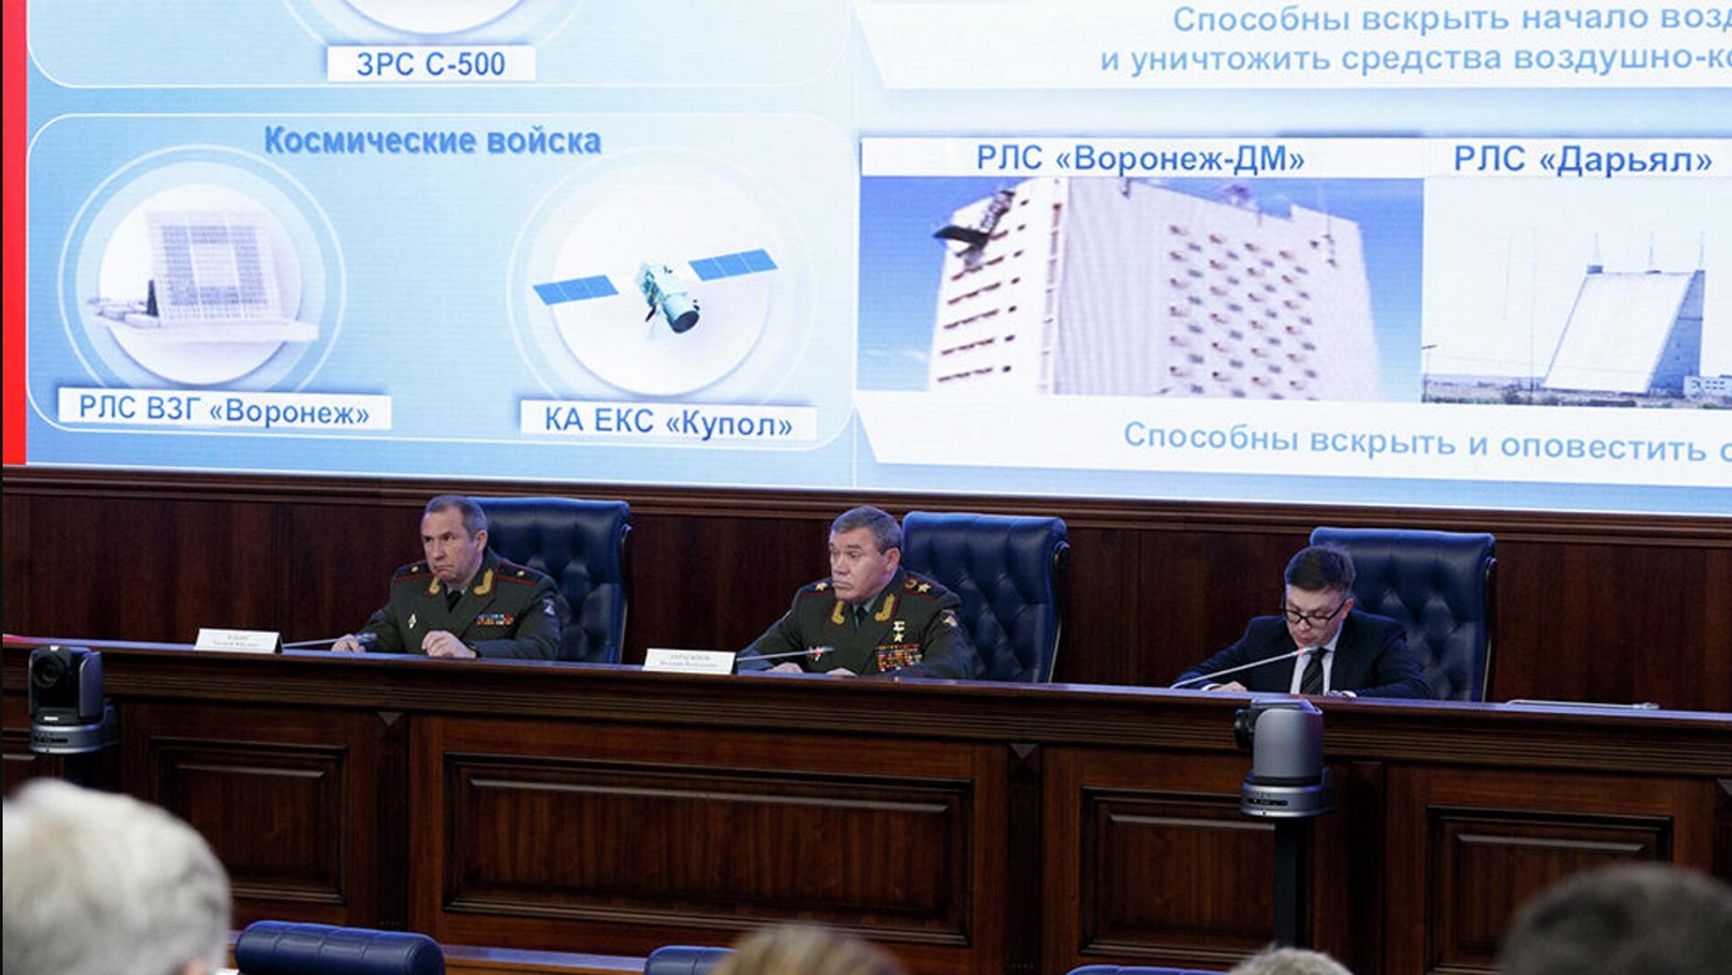 Начальник Генштаба ВС РФ Валерий Герасимов на фоне презентации с ЕКС «Купол», 18 декабря 2019 года